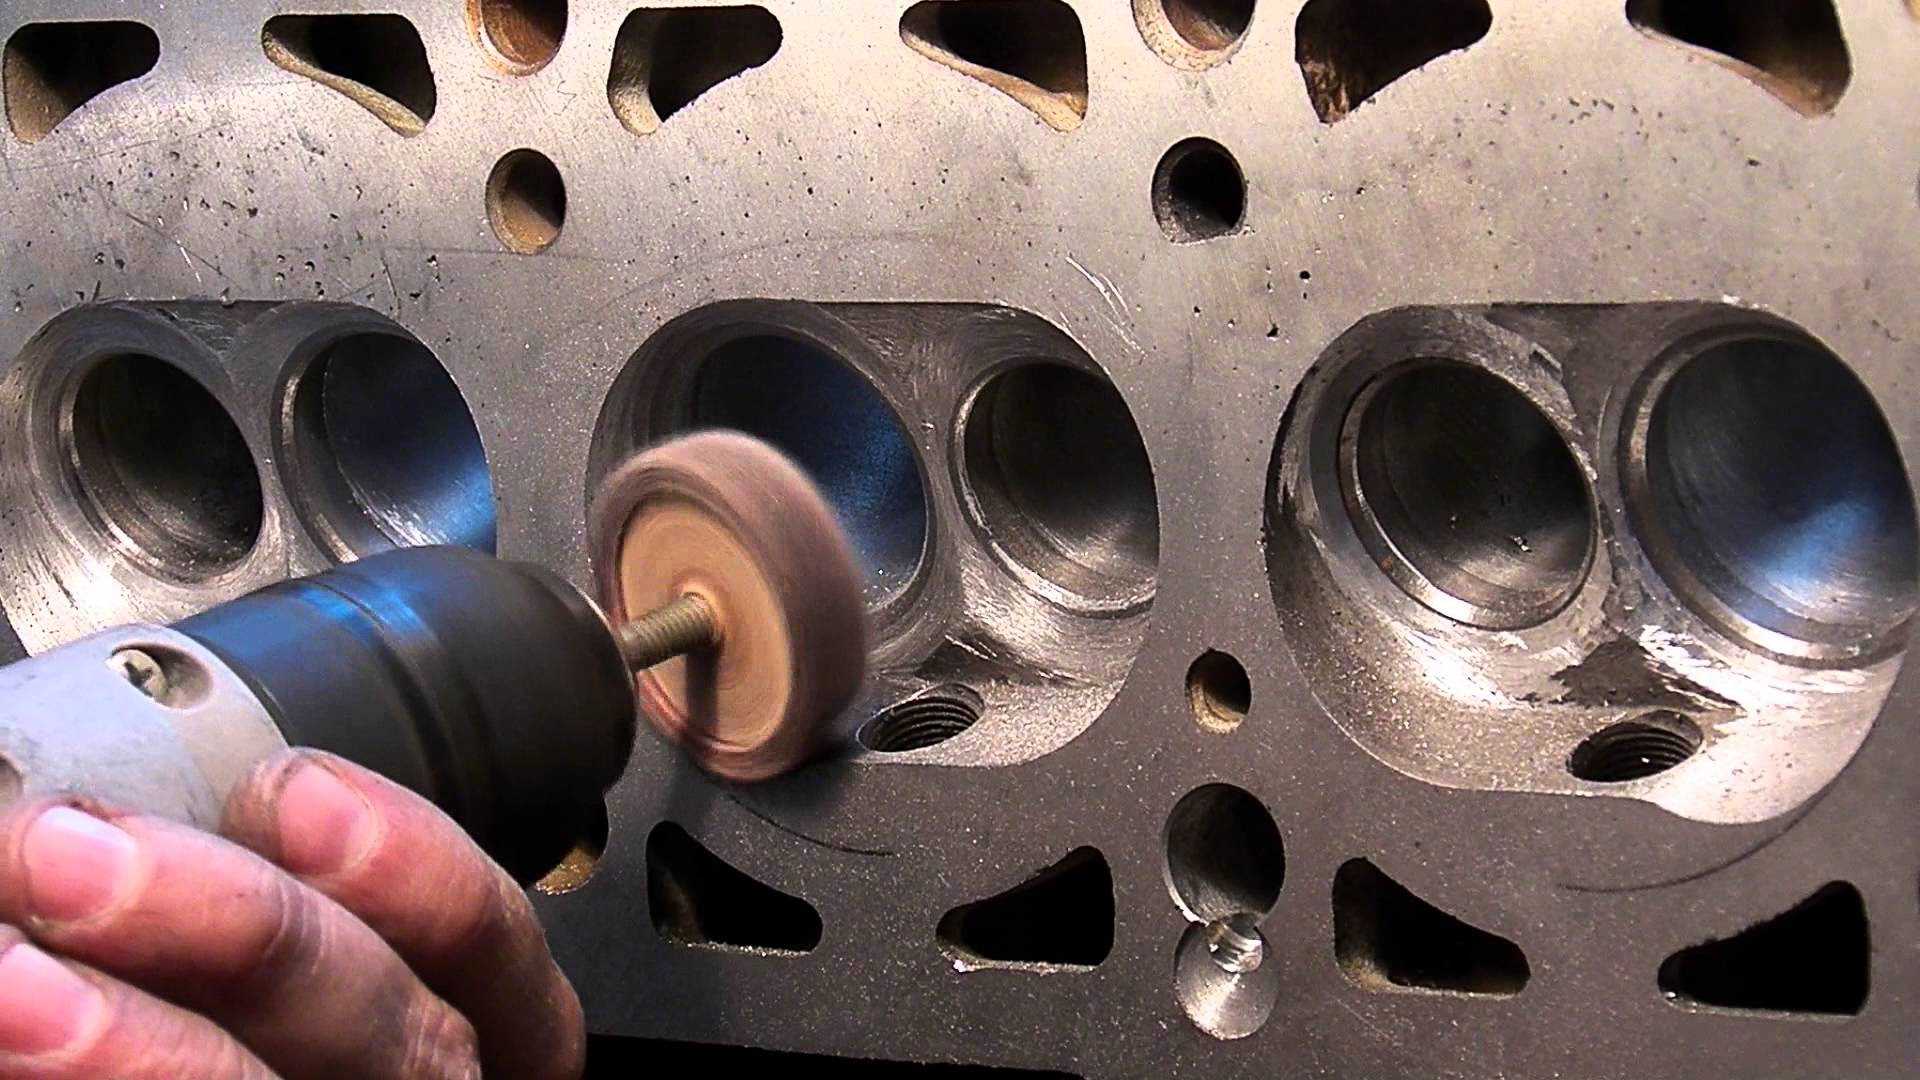 Ремонт блока цилиндров двигателя: что нужно знать